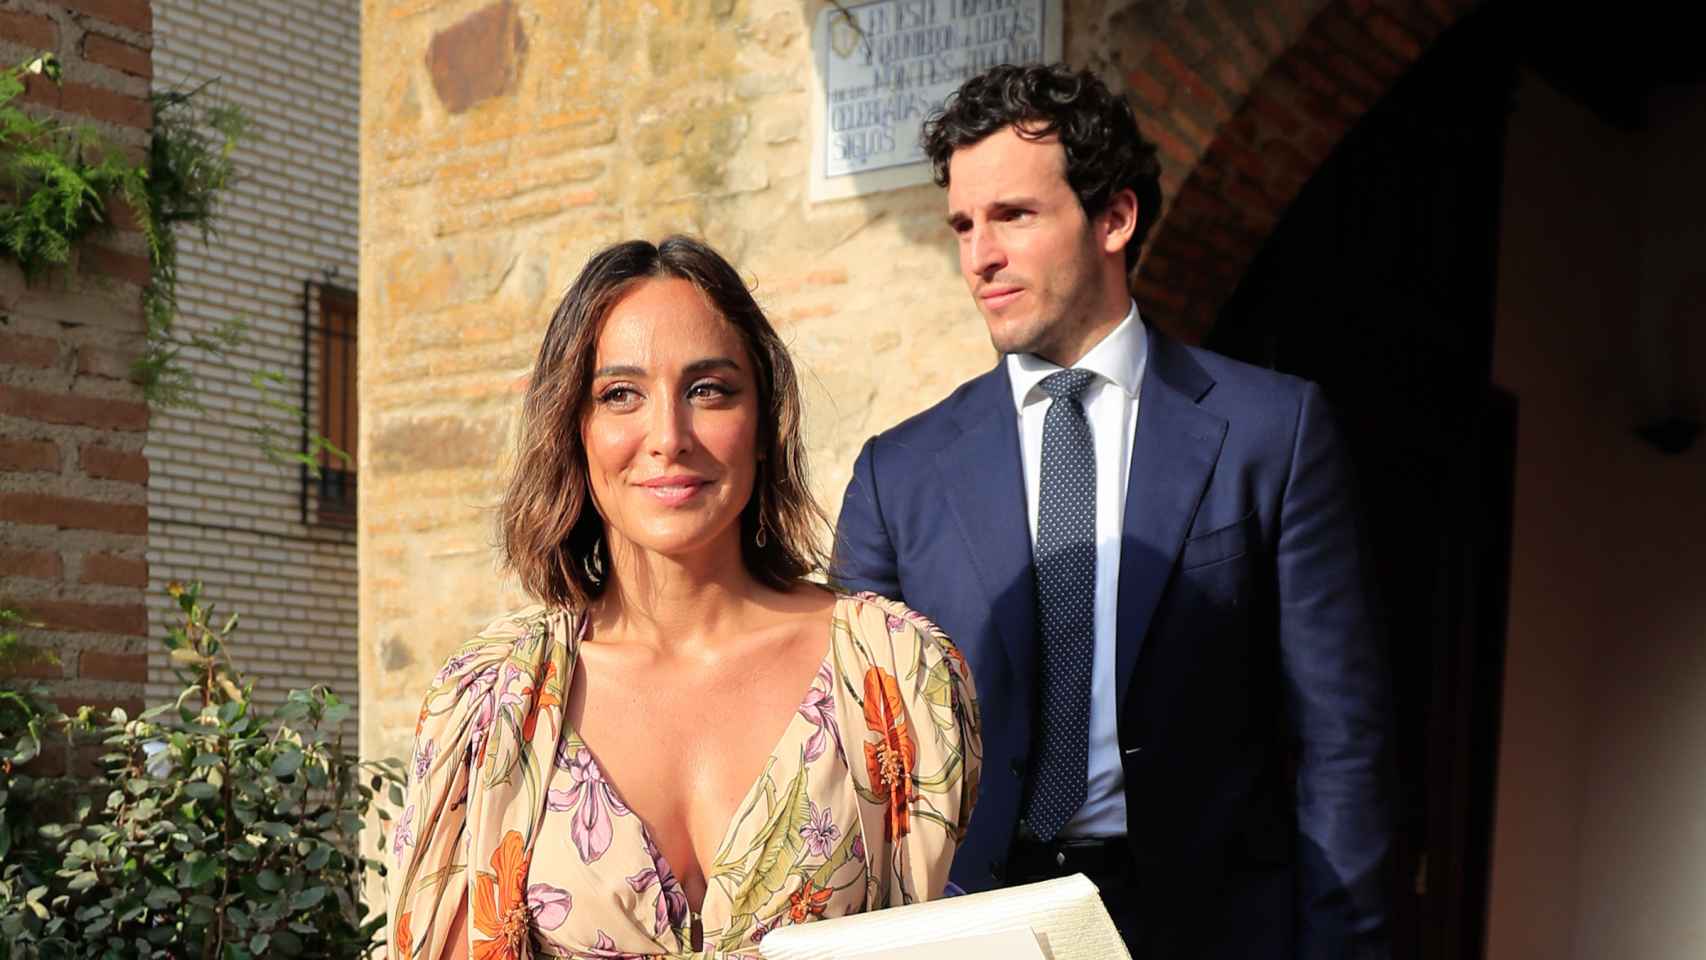 Tamara Falcó e Íñigo Onieva en una boda, en julio de 2021, cuando aún eran pareja.